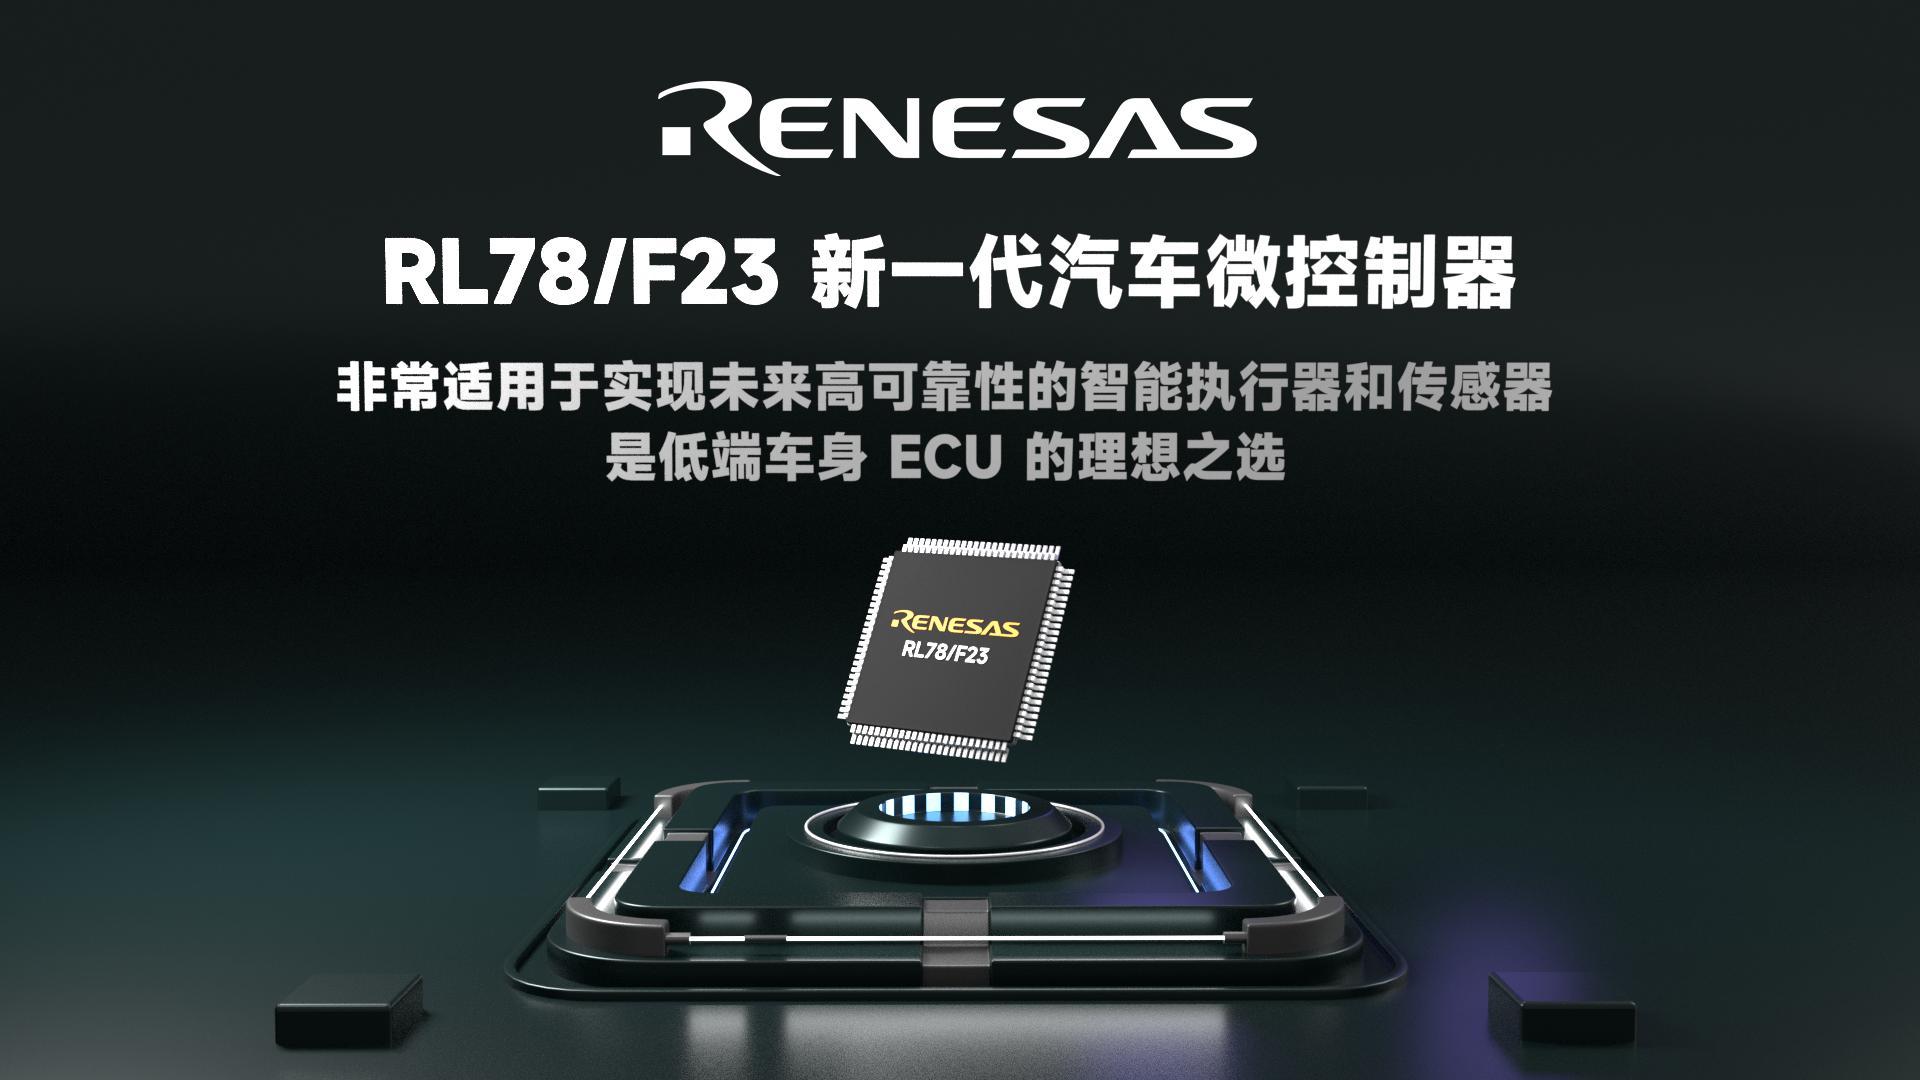 Renesas瑞萨电子 RL78/F23 新一代汽车微控制器